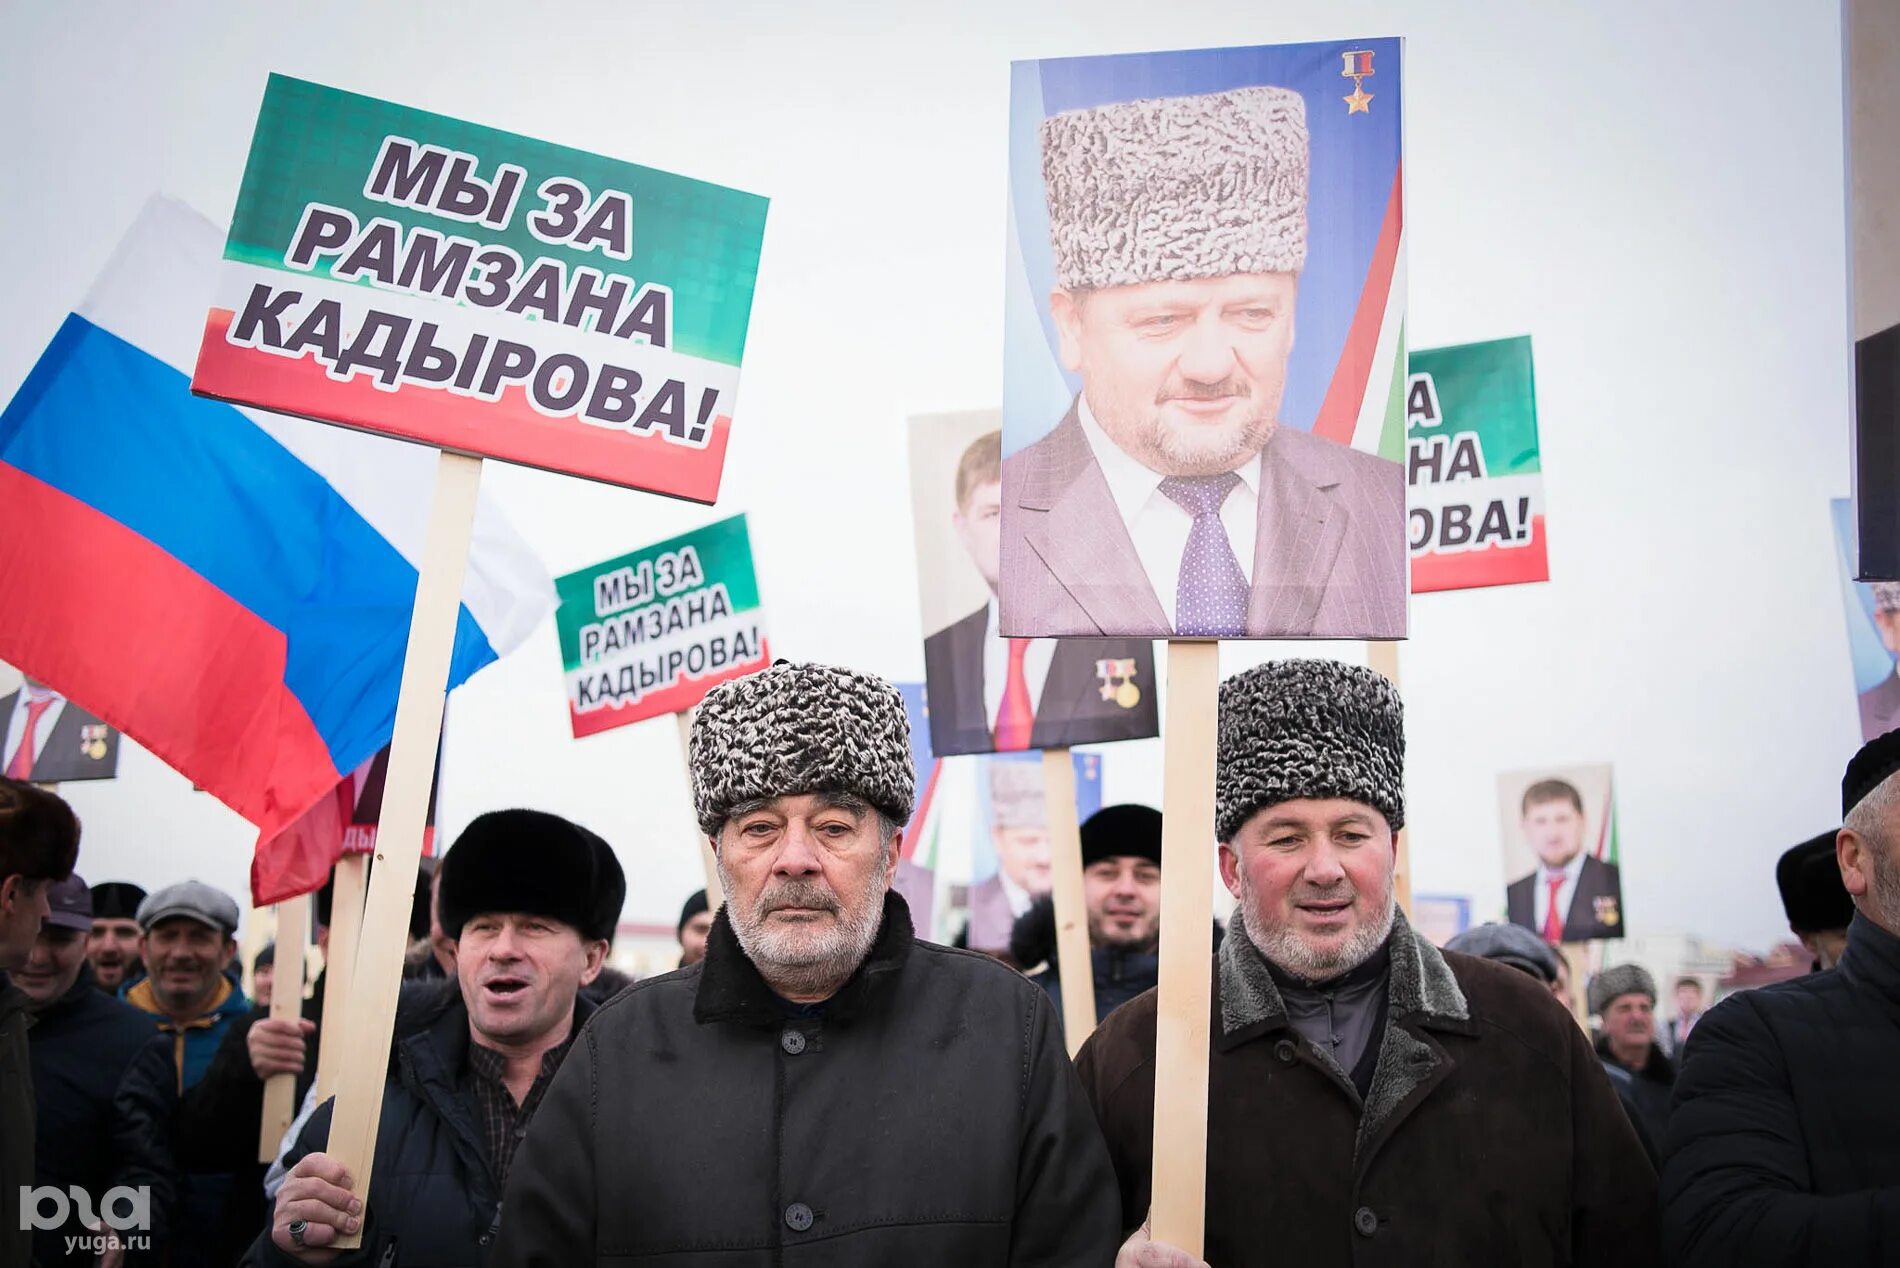 Митинг в Грозном. Даудов выступил на митинге в Грозном. Митинг в поддержку Кадырова в Чечне. Митинг в Грозном большой флаг. Кадыров помощь